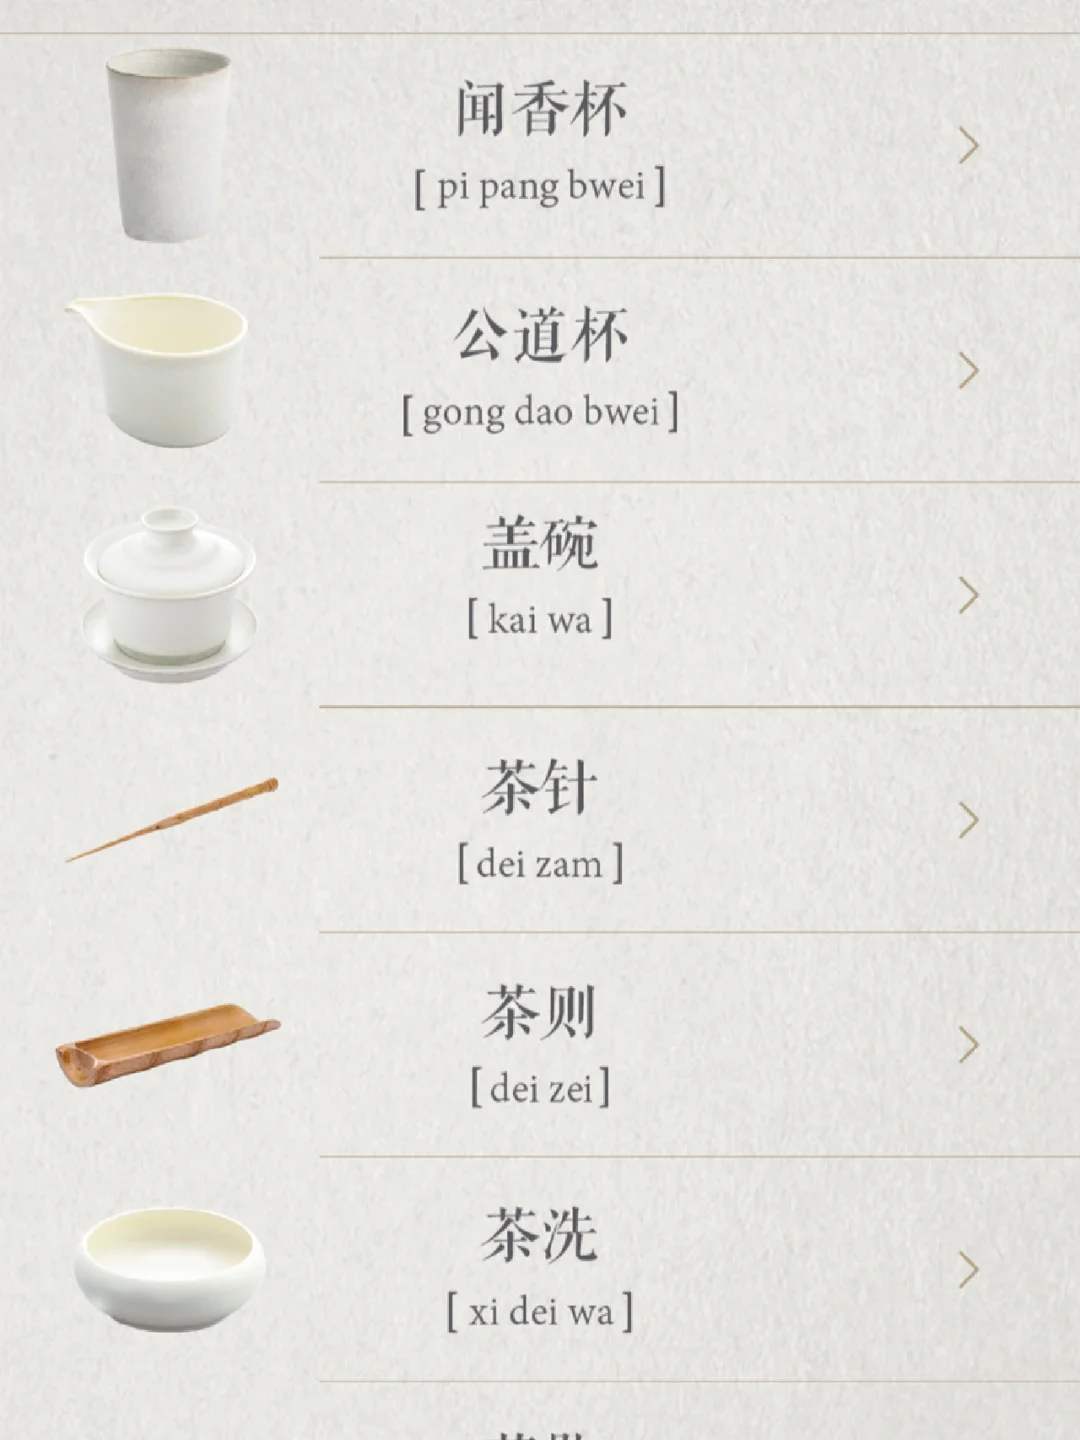 关于品茶·分享审美极佳的app【食茶】